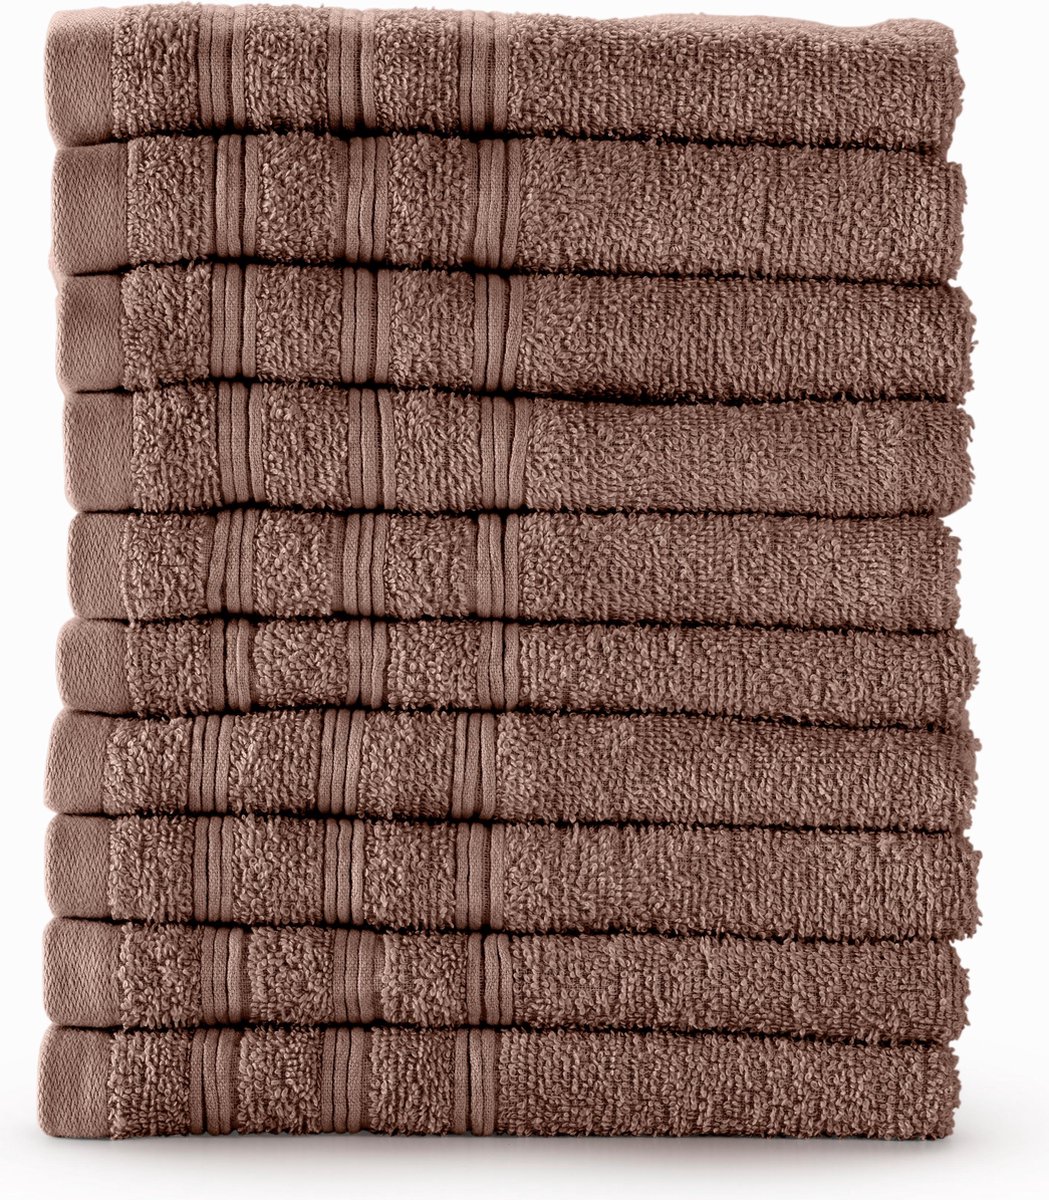 Bamatex Home Textiles Collectie MANCHESTER - Handdoek - 50*90 cm - CHOCOLATE - set van 10 stuks